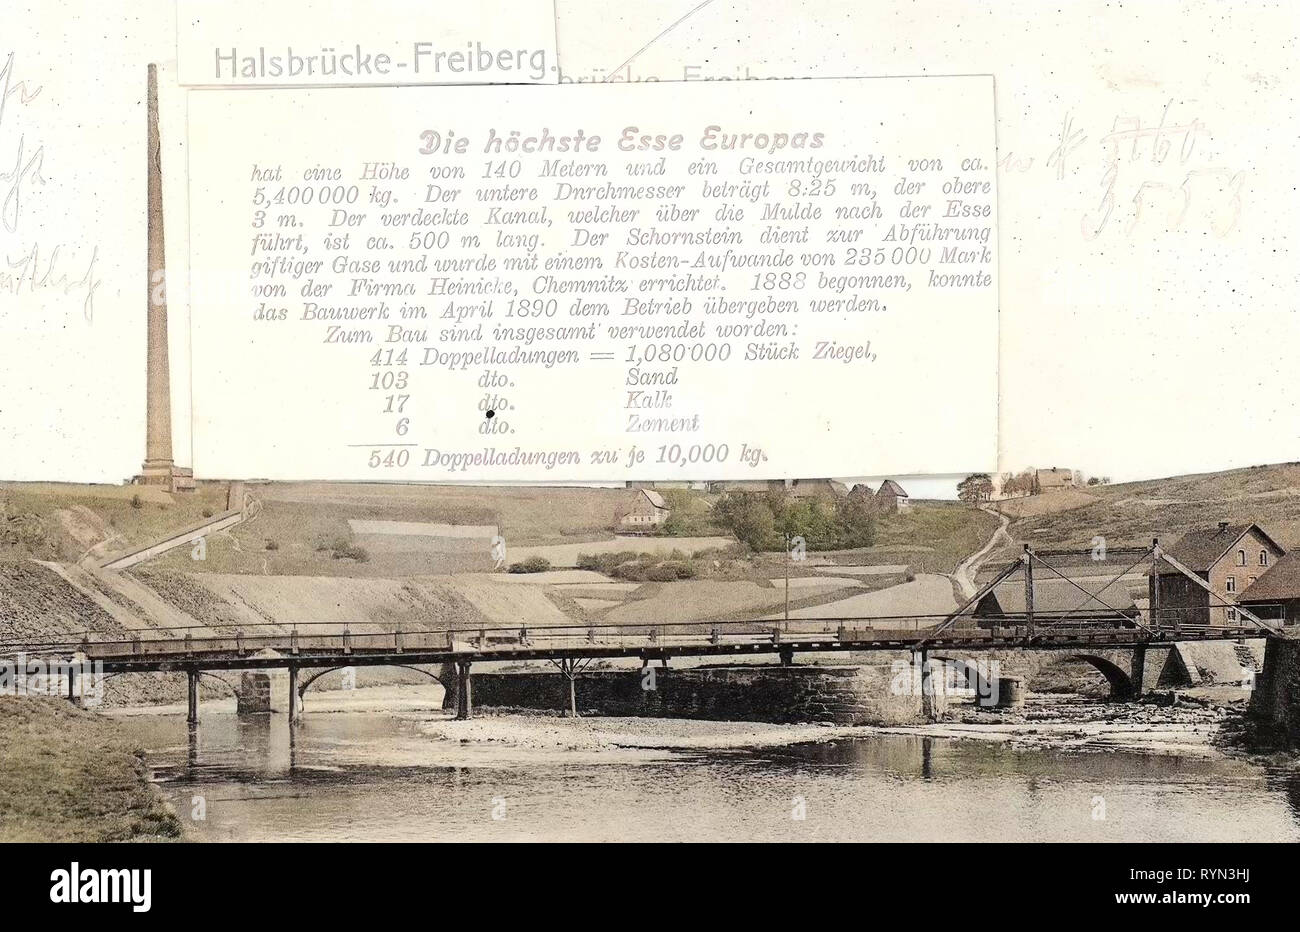 Halsbrücker Esse, Bridges in Landkreis Mittelsachsen, Texts, 1904, Landkreis Mittelsachsen, Halsbrücke, Höchste Esse der Erde 140 m, Germany Stock Photo